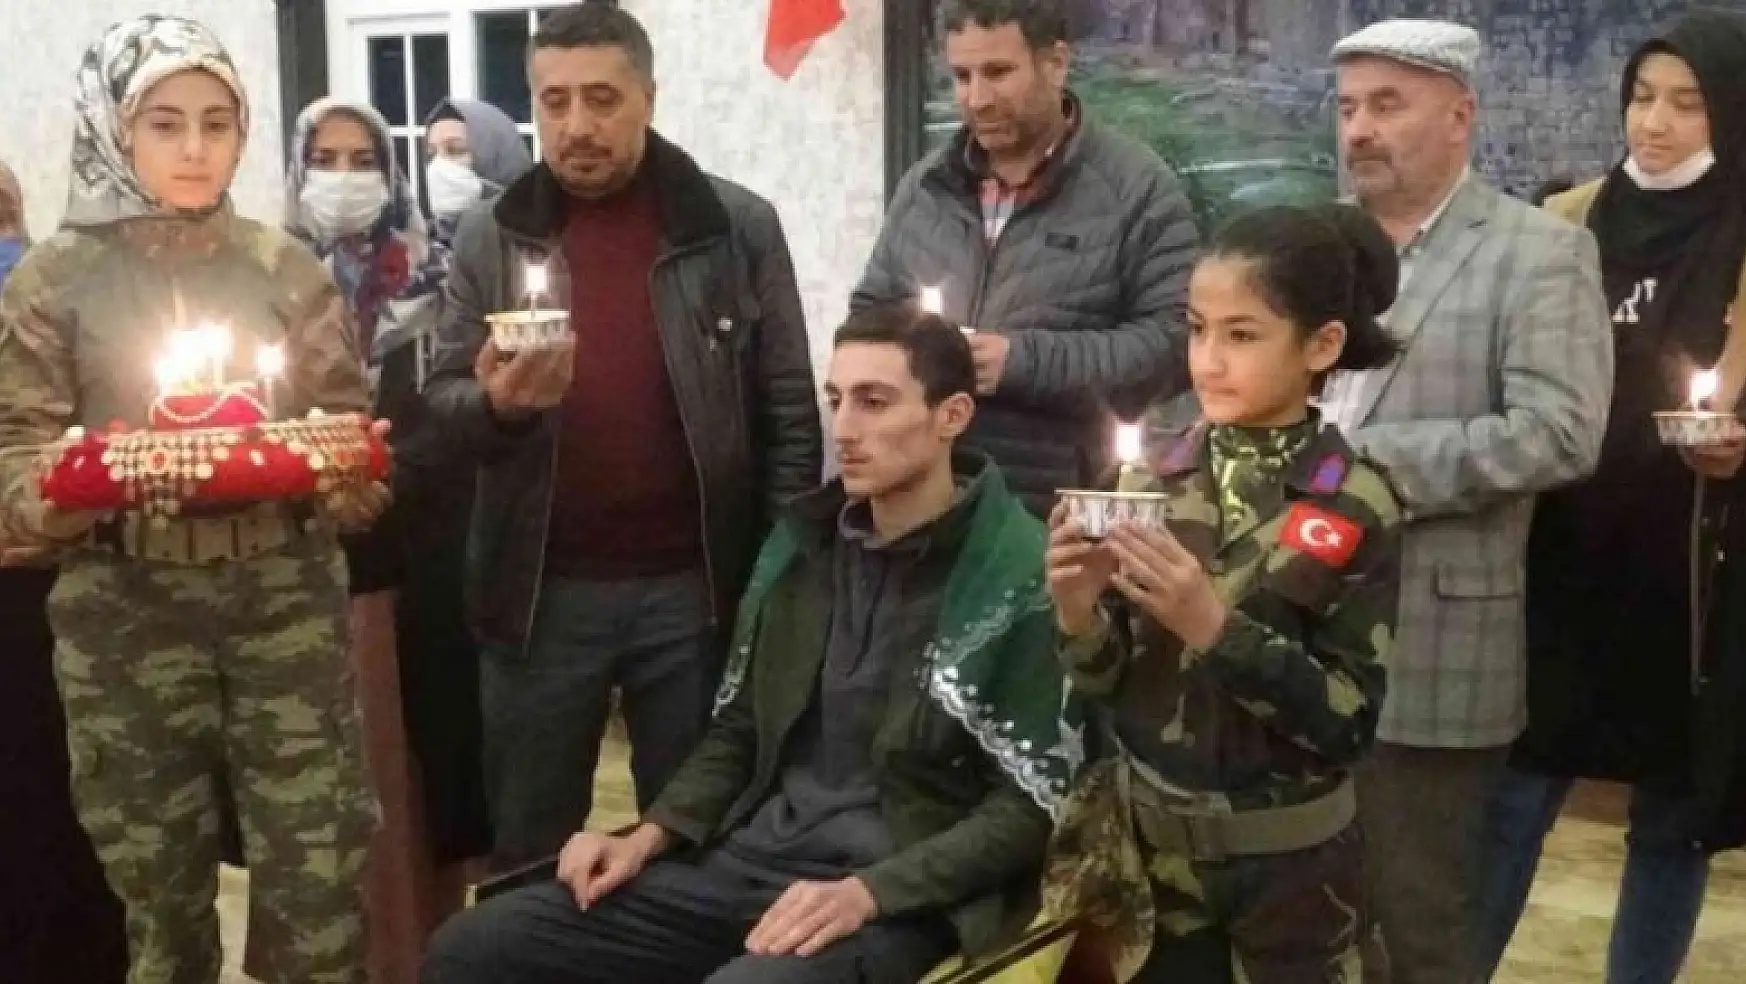 Oğlunu PKK'dan kurtardı, şimdi askere gönderecek